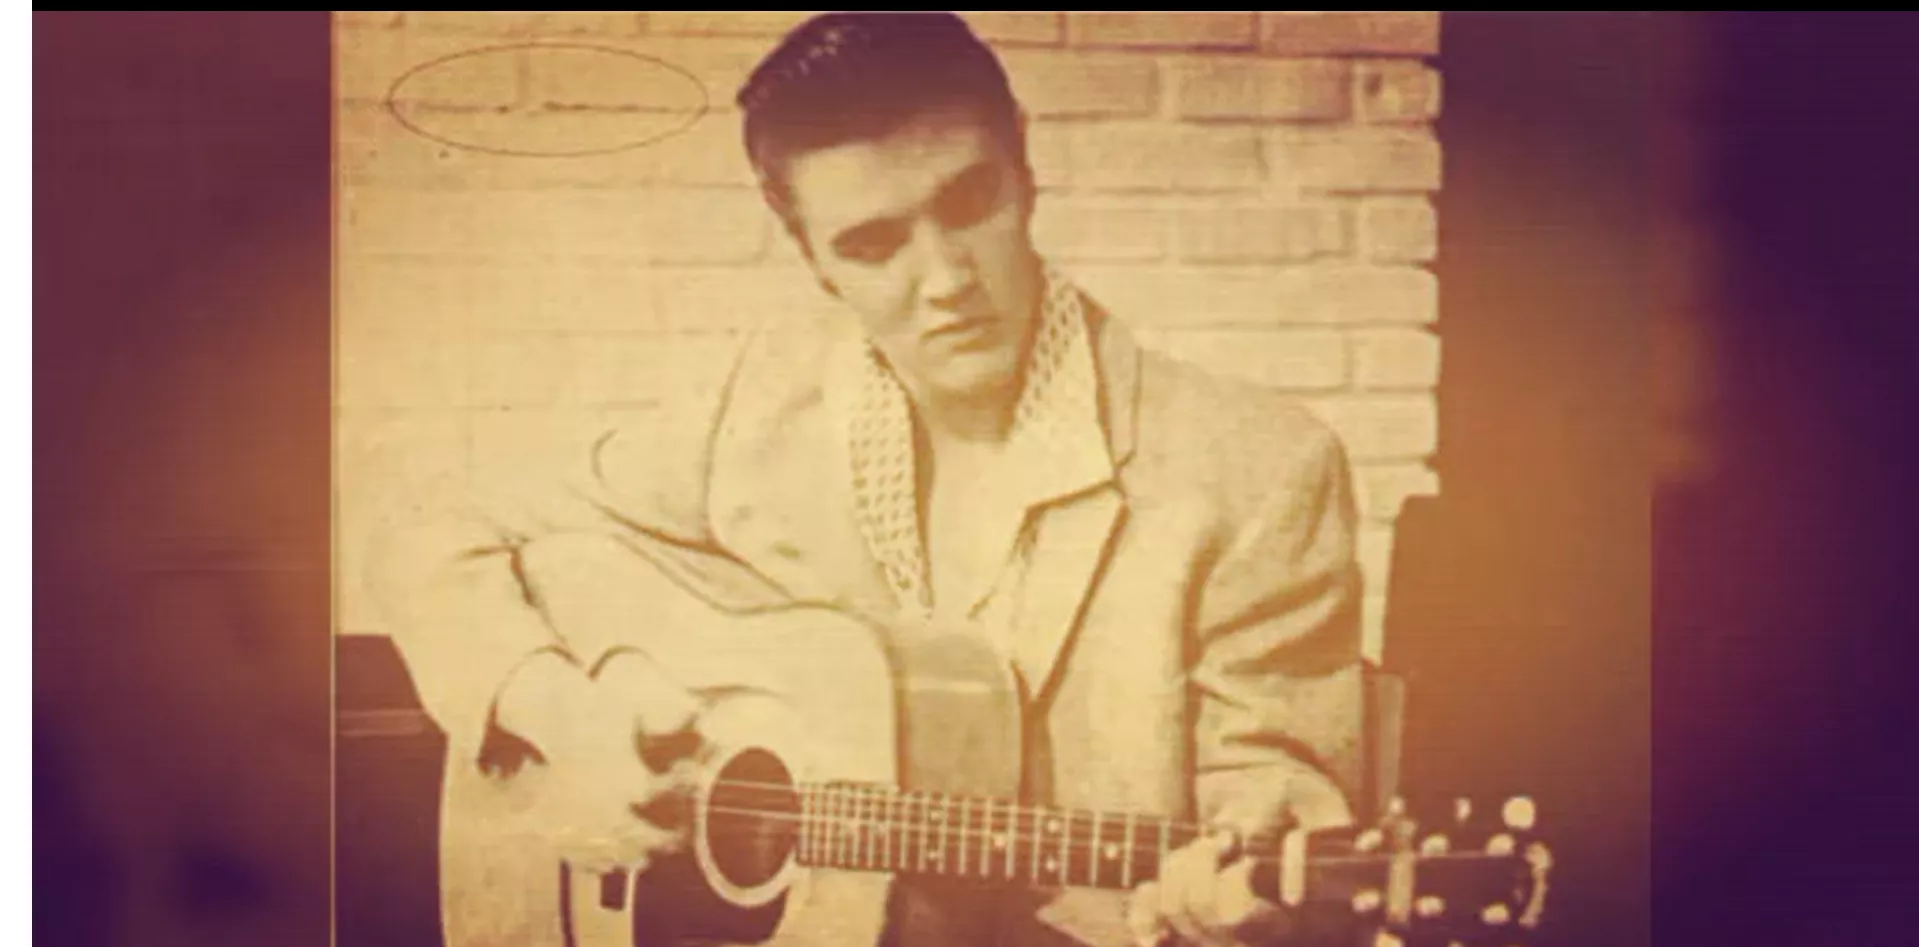 MUSIKÅRET 1953: Vätebomber sprängs medan Elvis Presley gör sina första inspelningar